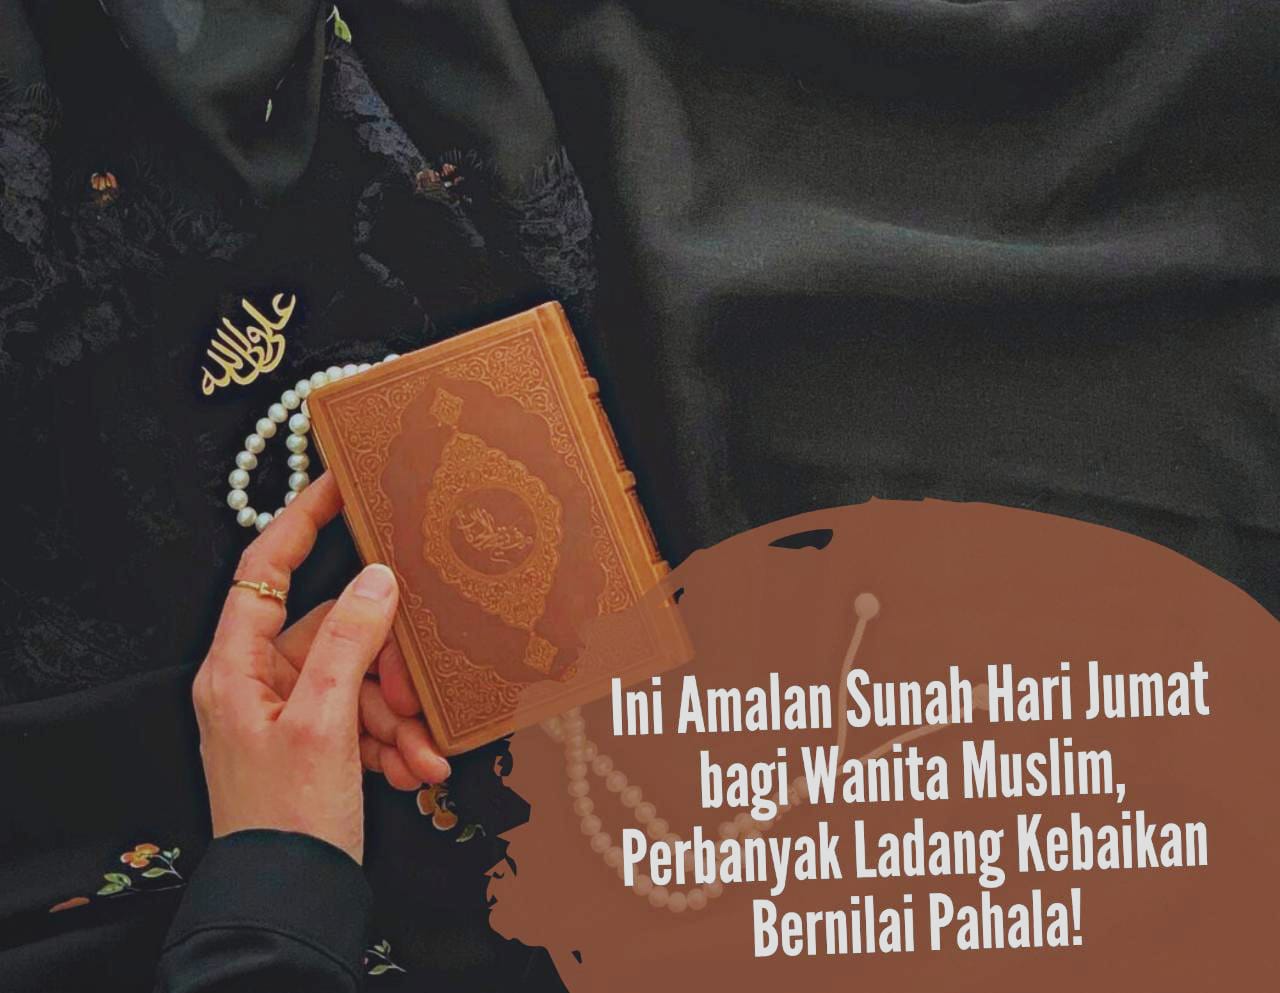 Sudah Hari Jumat! Ini Amalan yang Dianjurkan bagi Wanita Muslim, Perbanyak Ladang Kebaikan Bernilai Pahala